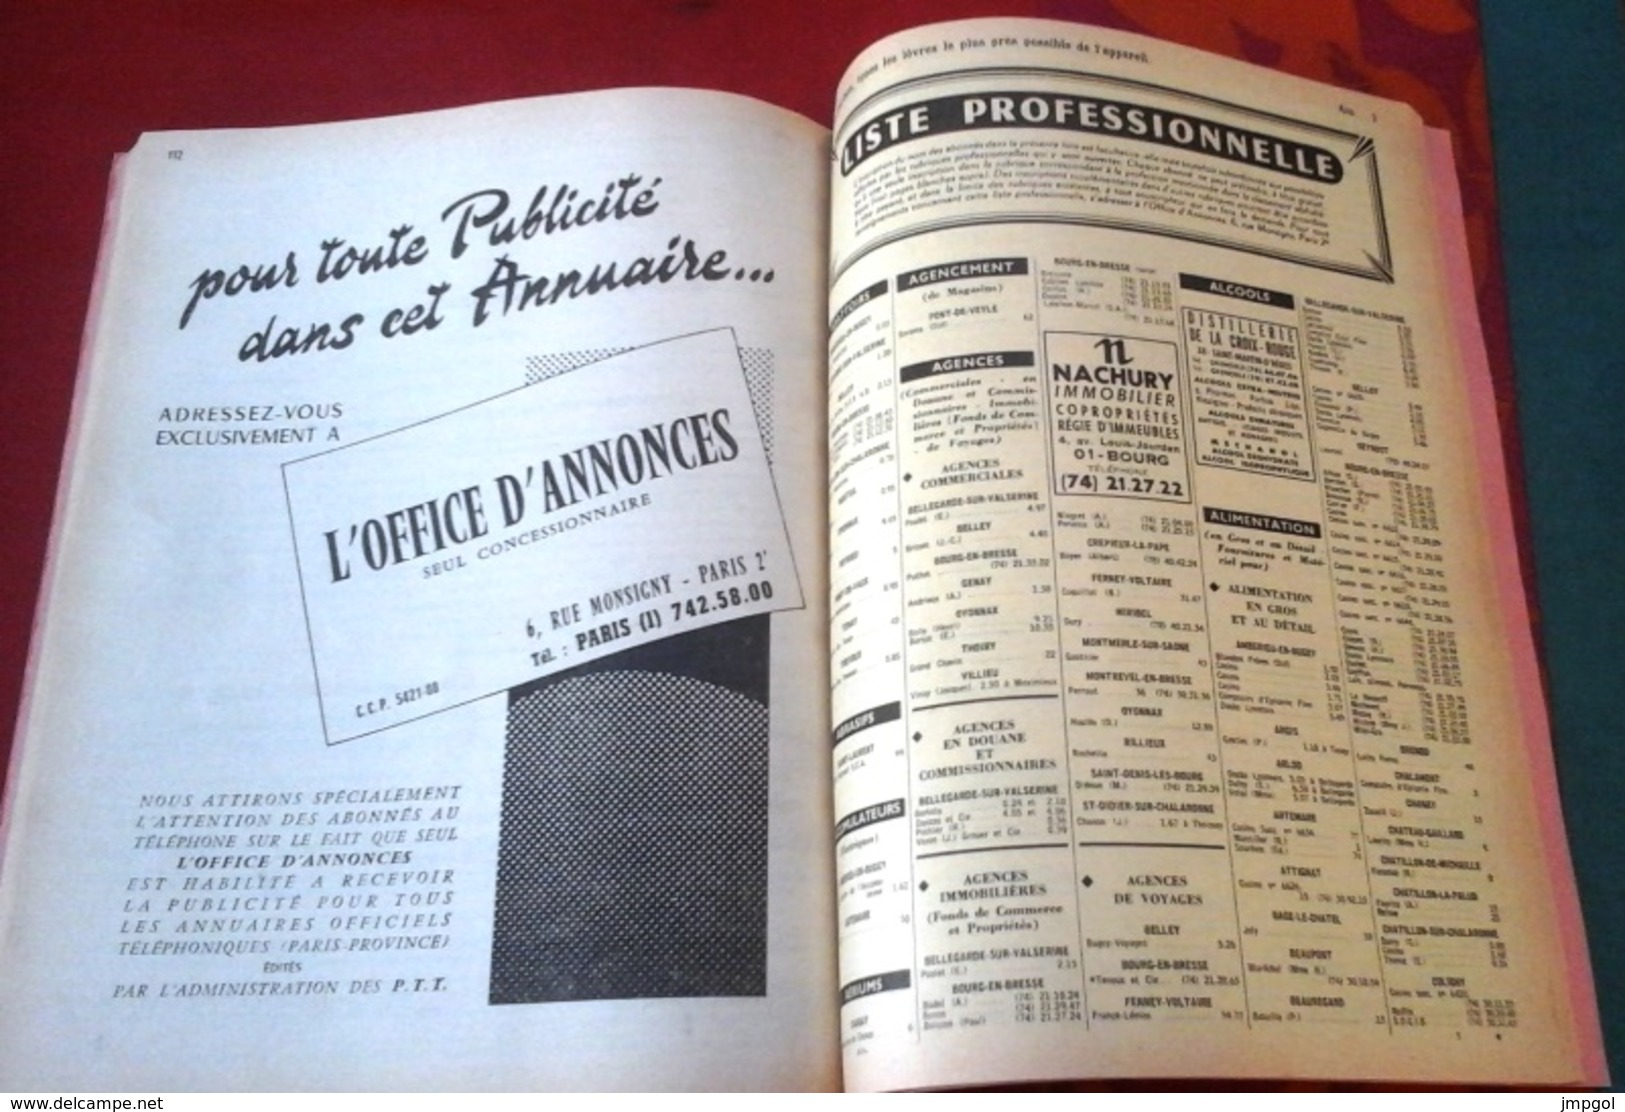 Annuaire Officiel Des Abonnés Au Téléphone AIN 1969 Pages Professionnelles Et Particuliers - Directorios Telefónicos